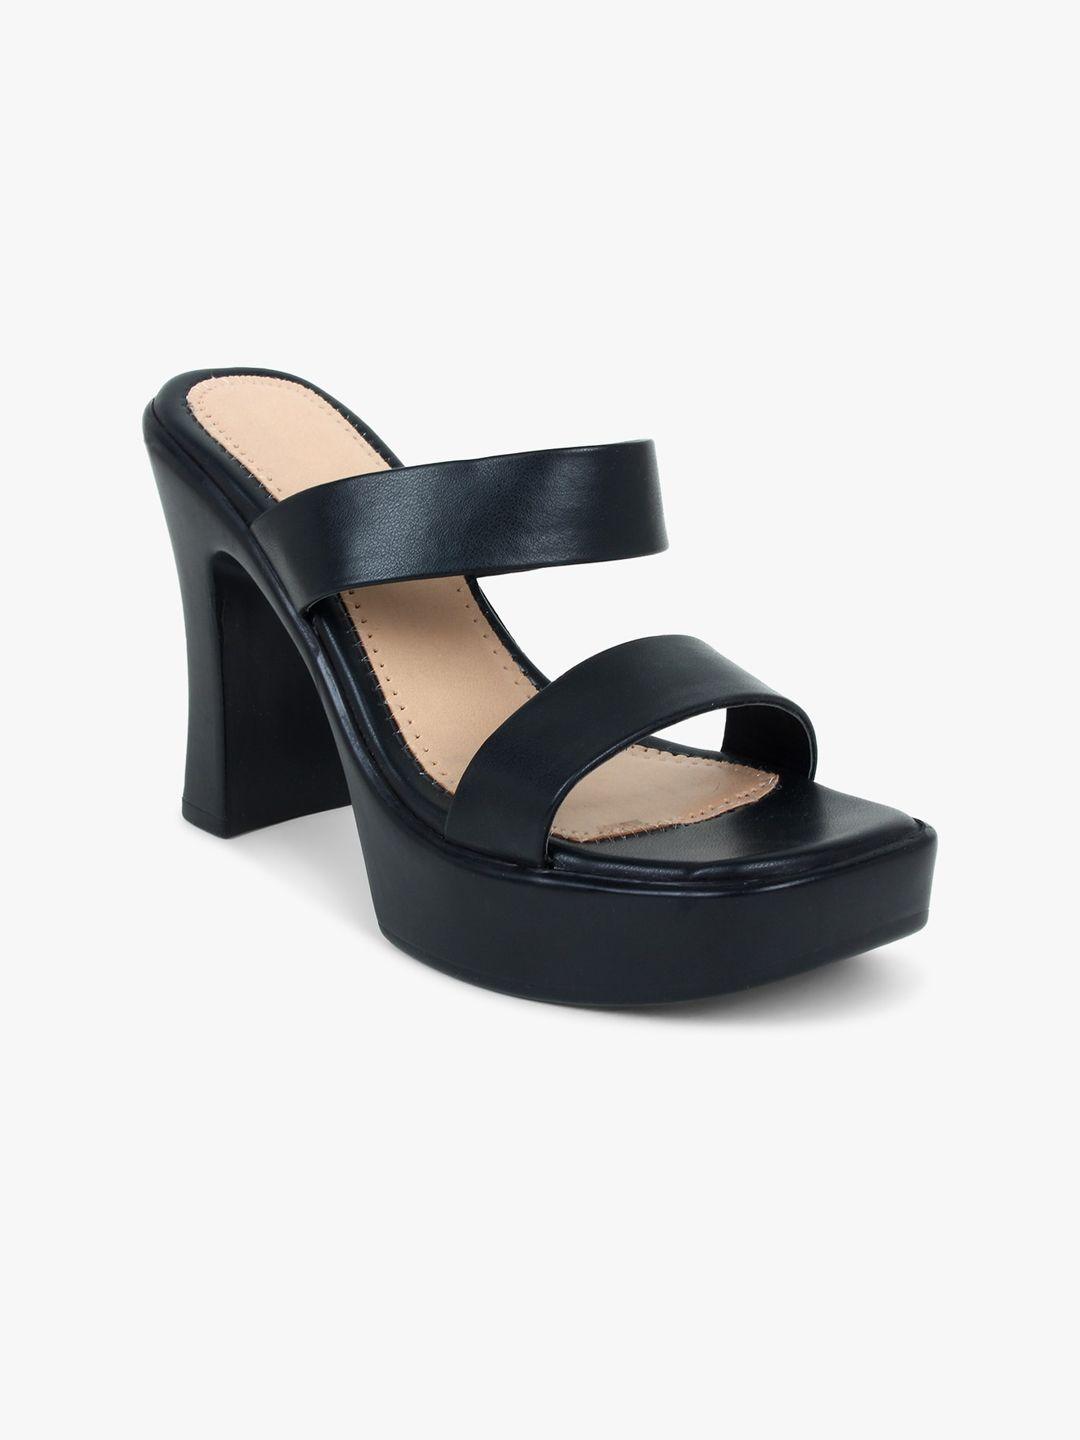 glitzy galz black block heels